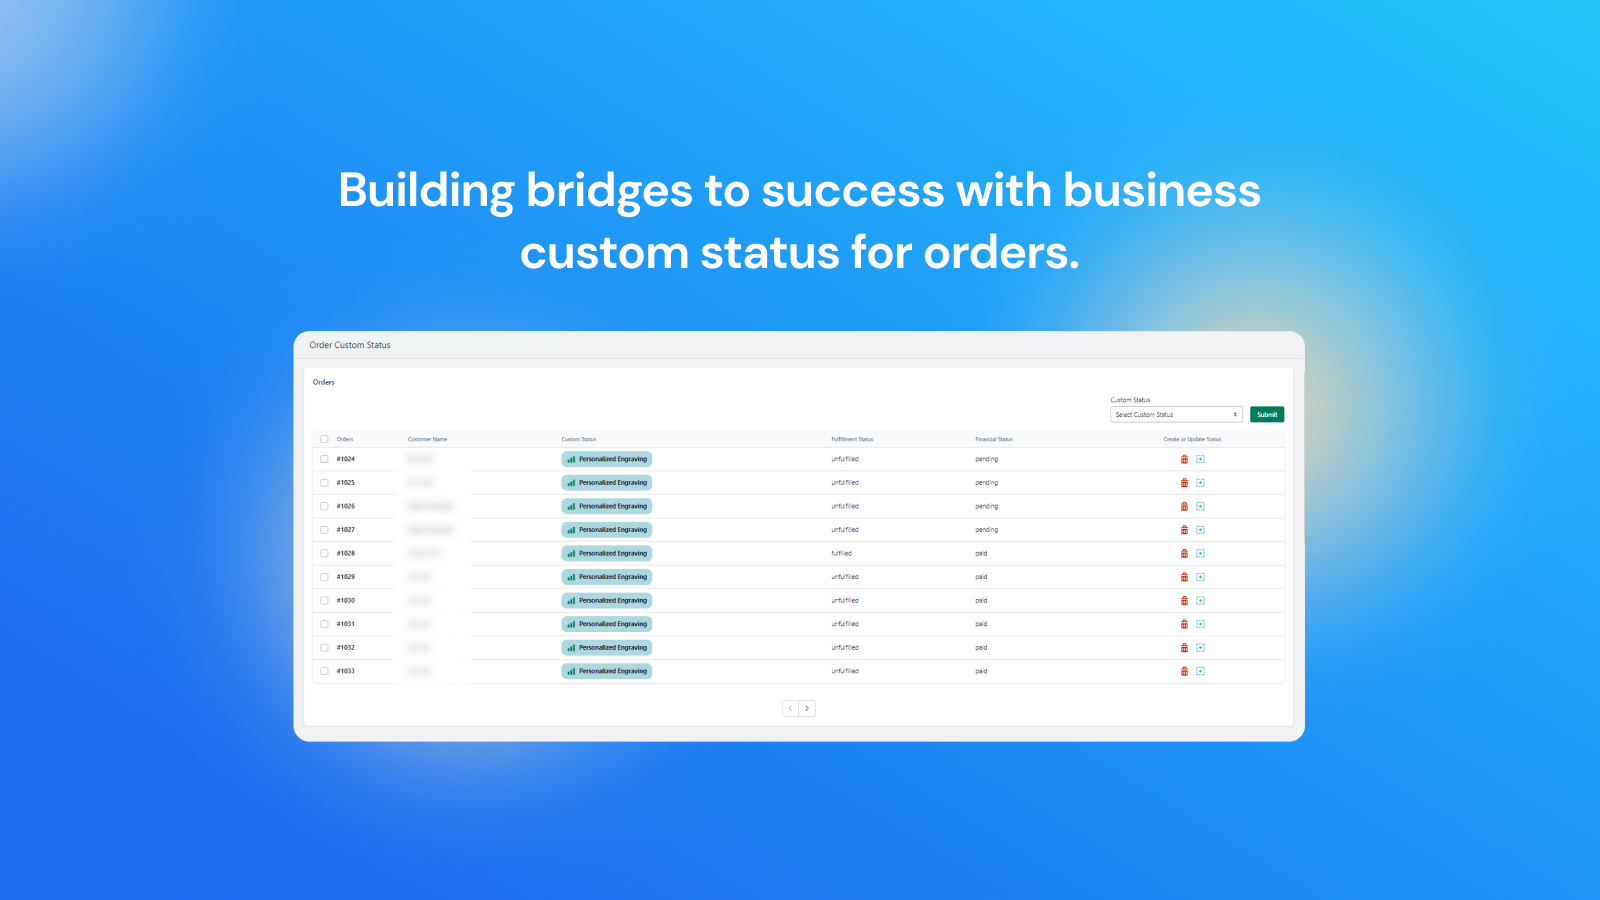 Building bridges to success with orders custom status